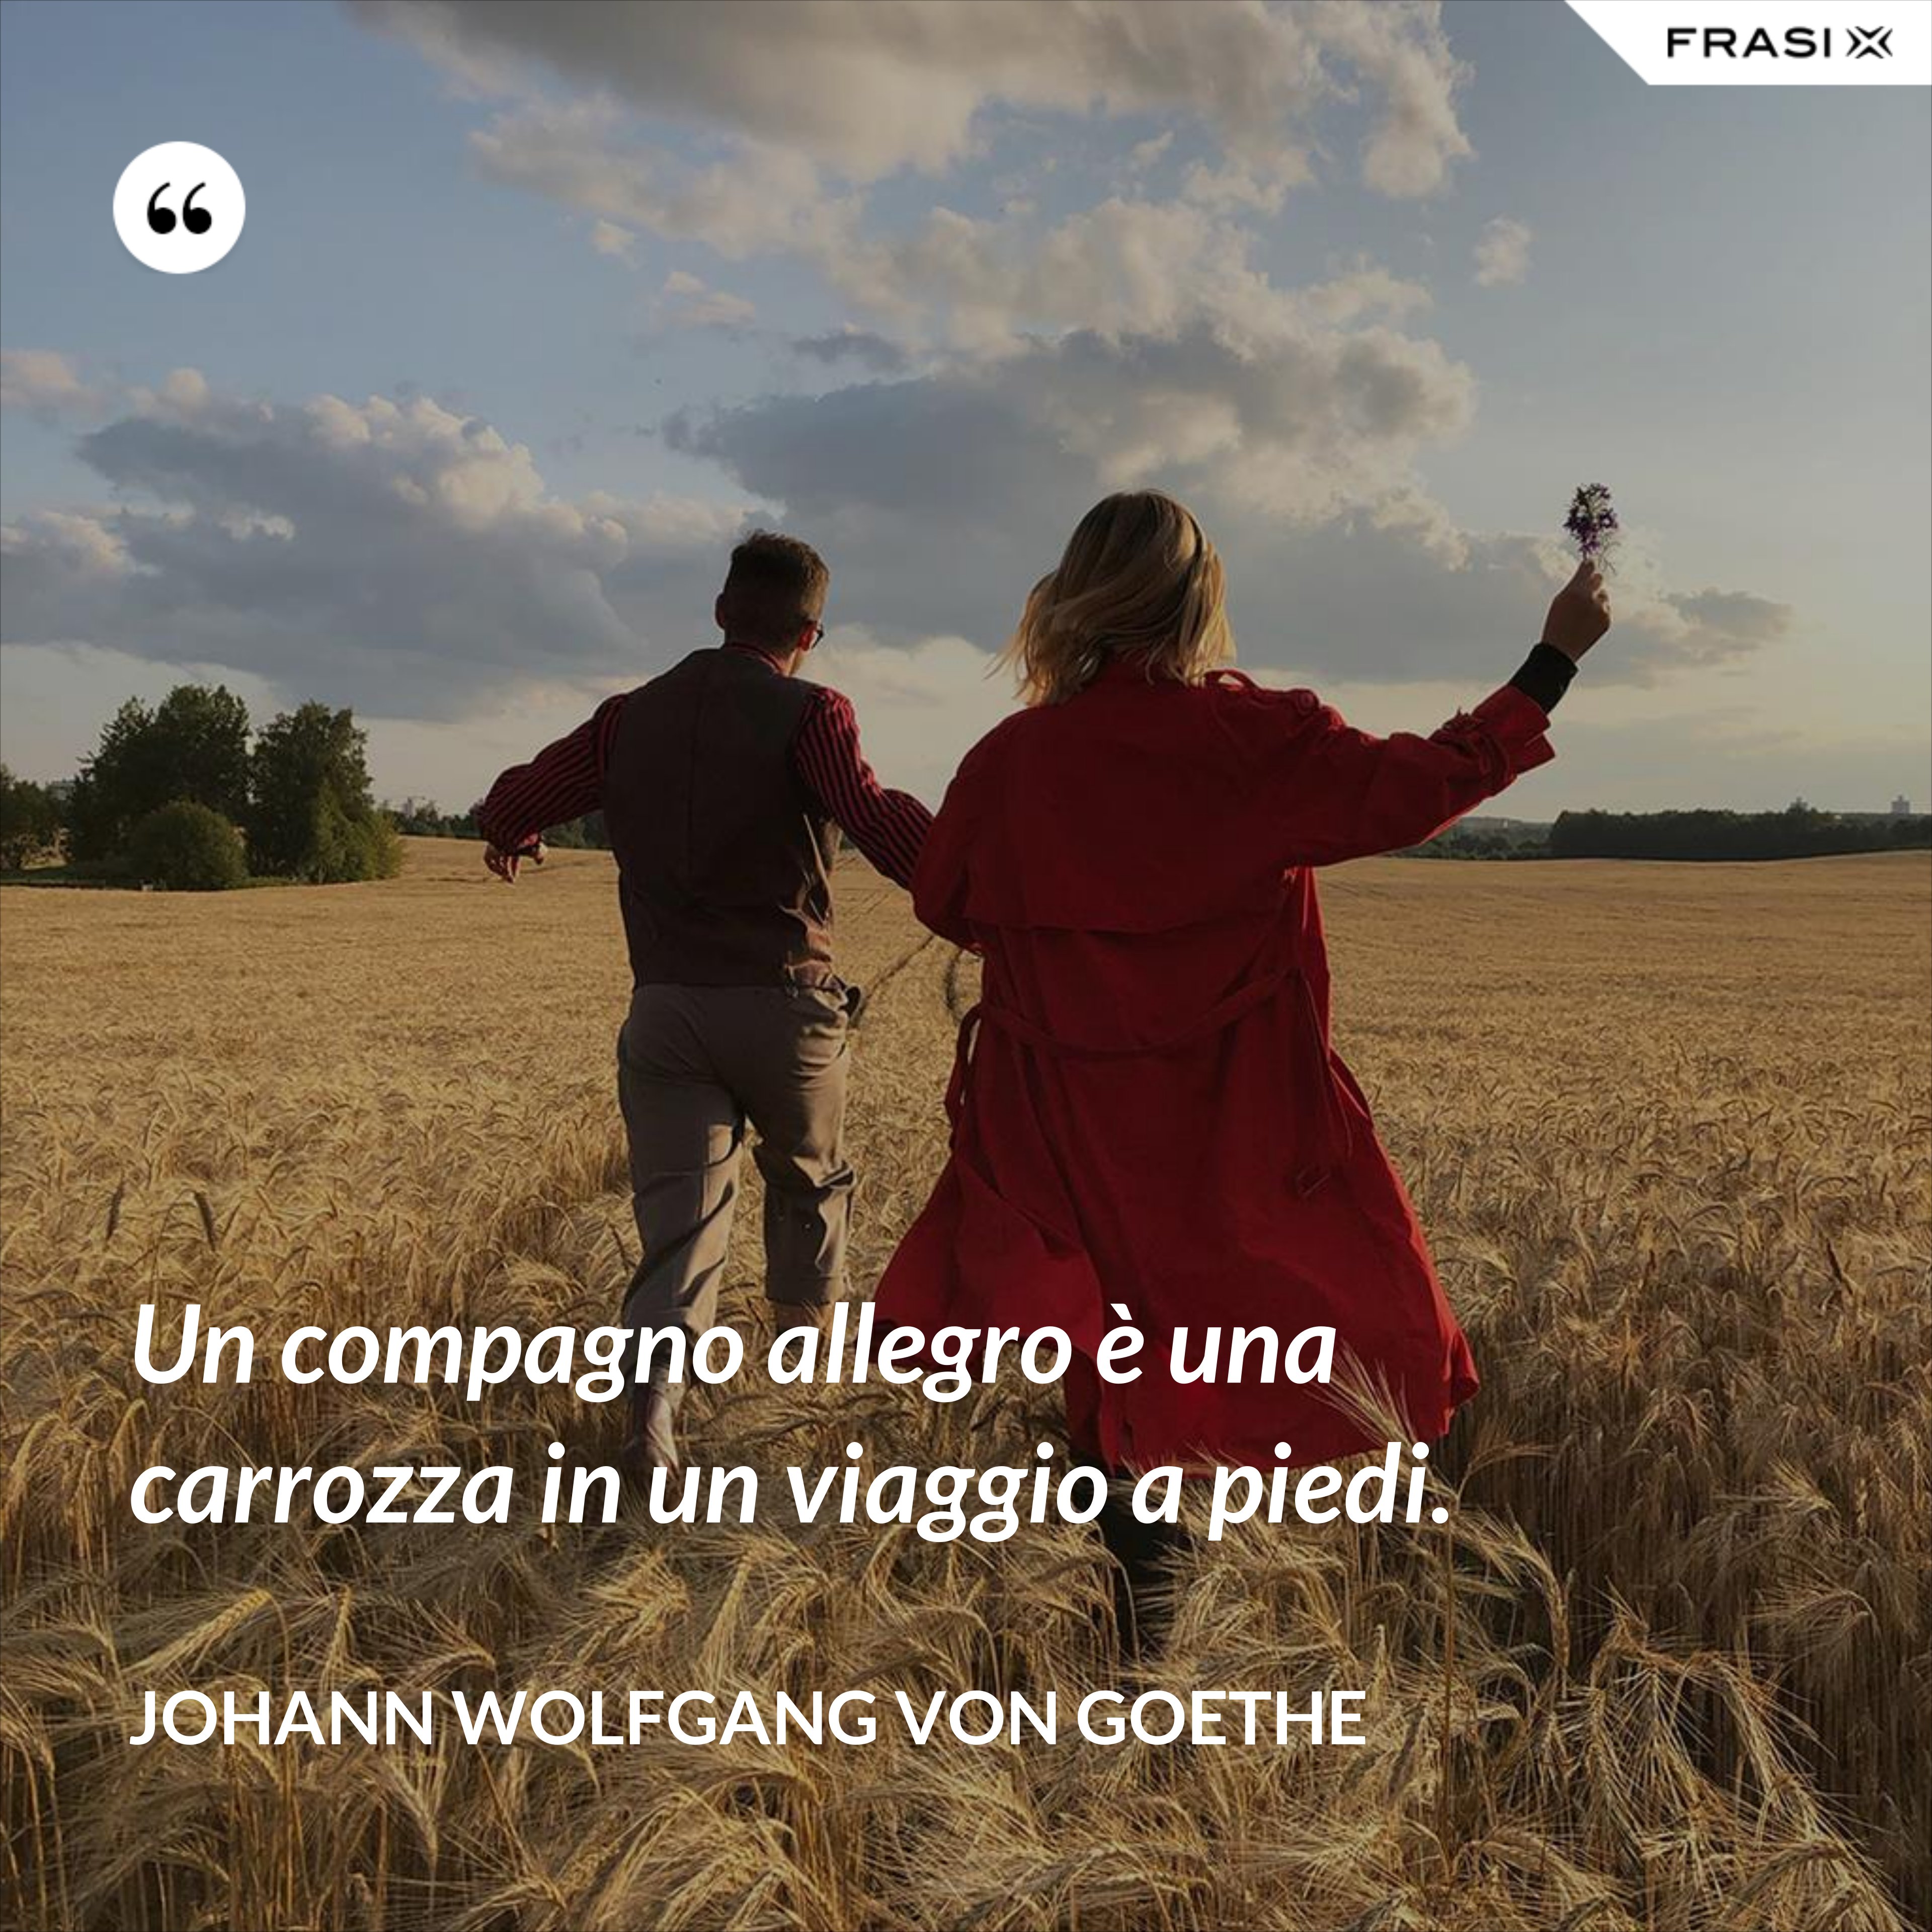 Un compagno allegro è una carrozza in un viaggio a piedi. - Johann Wolfgang von Goethe